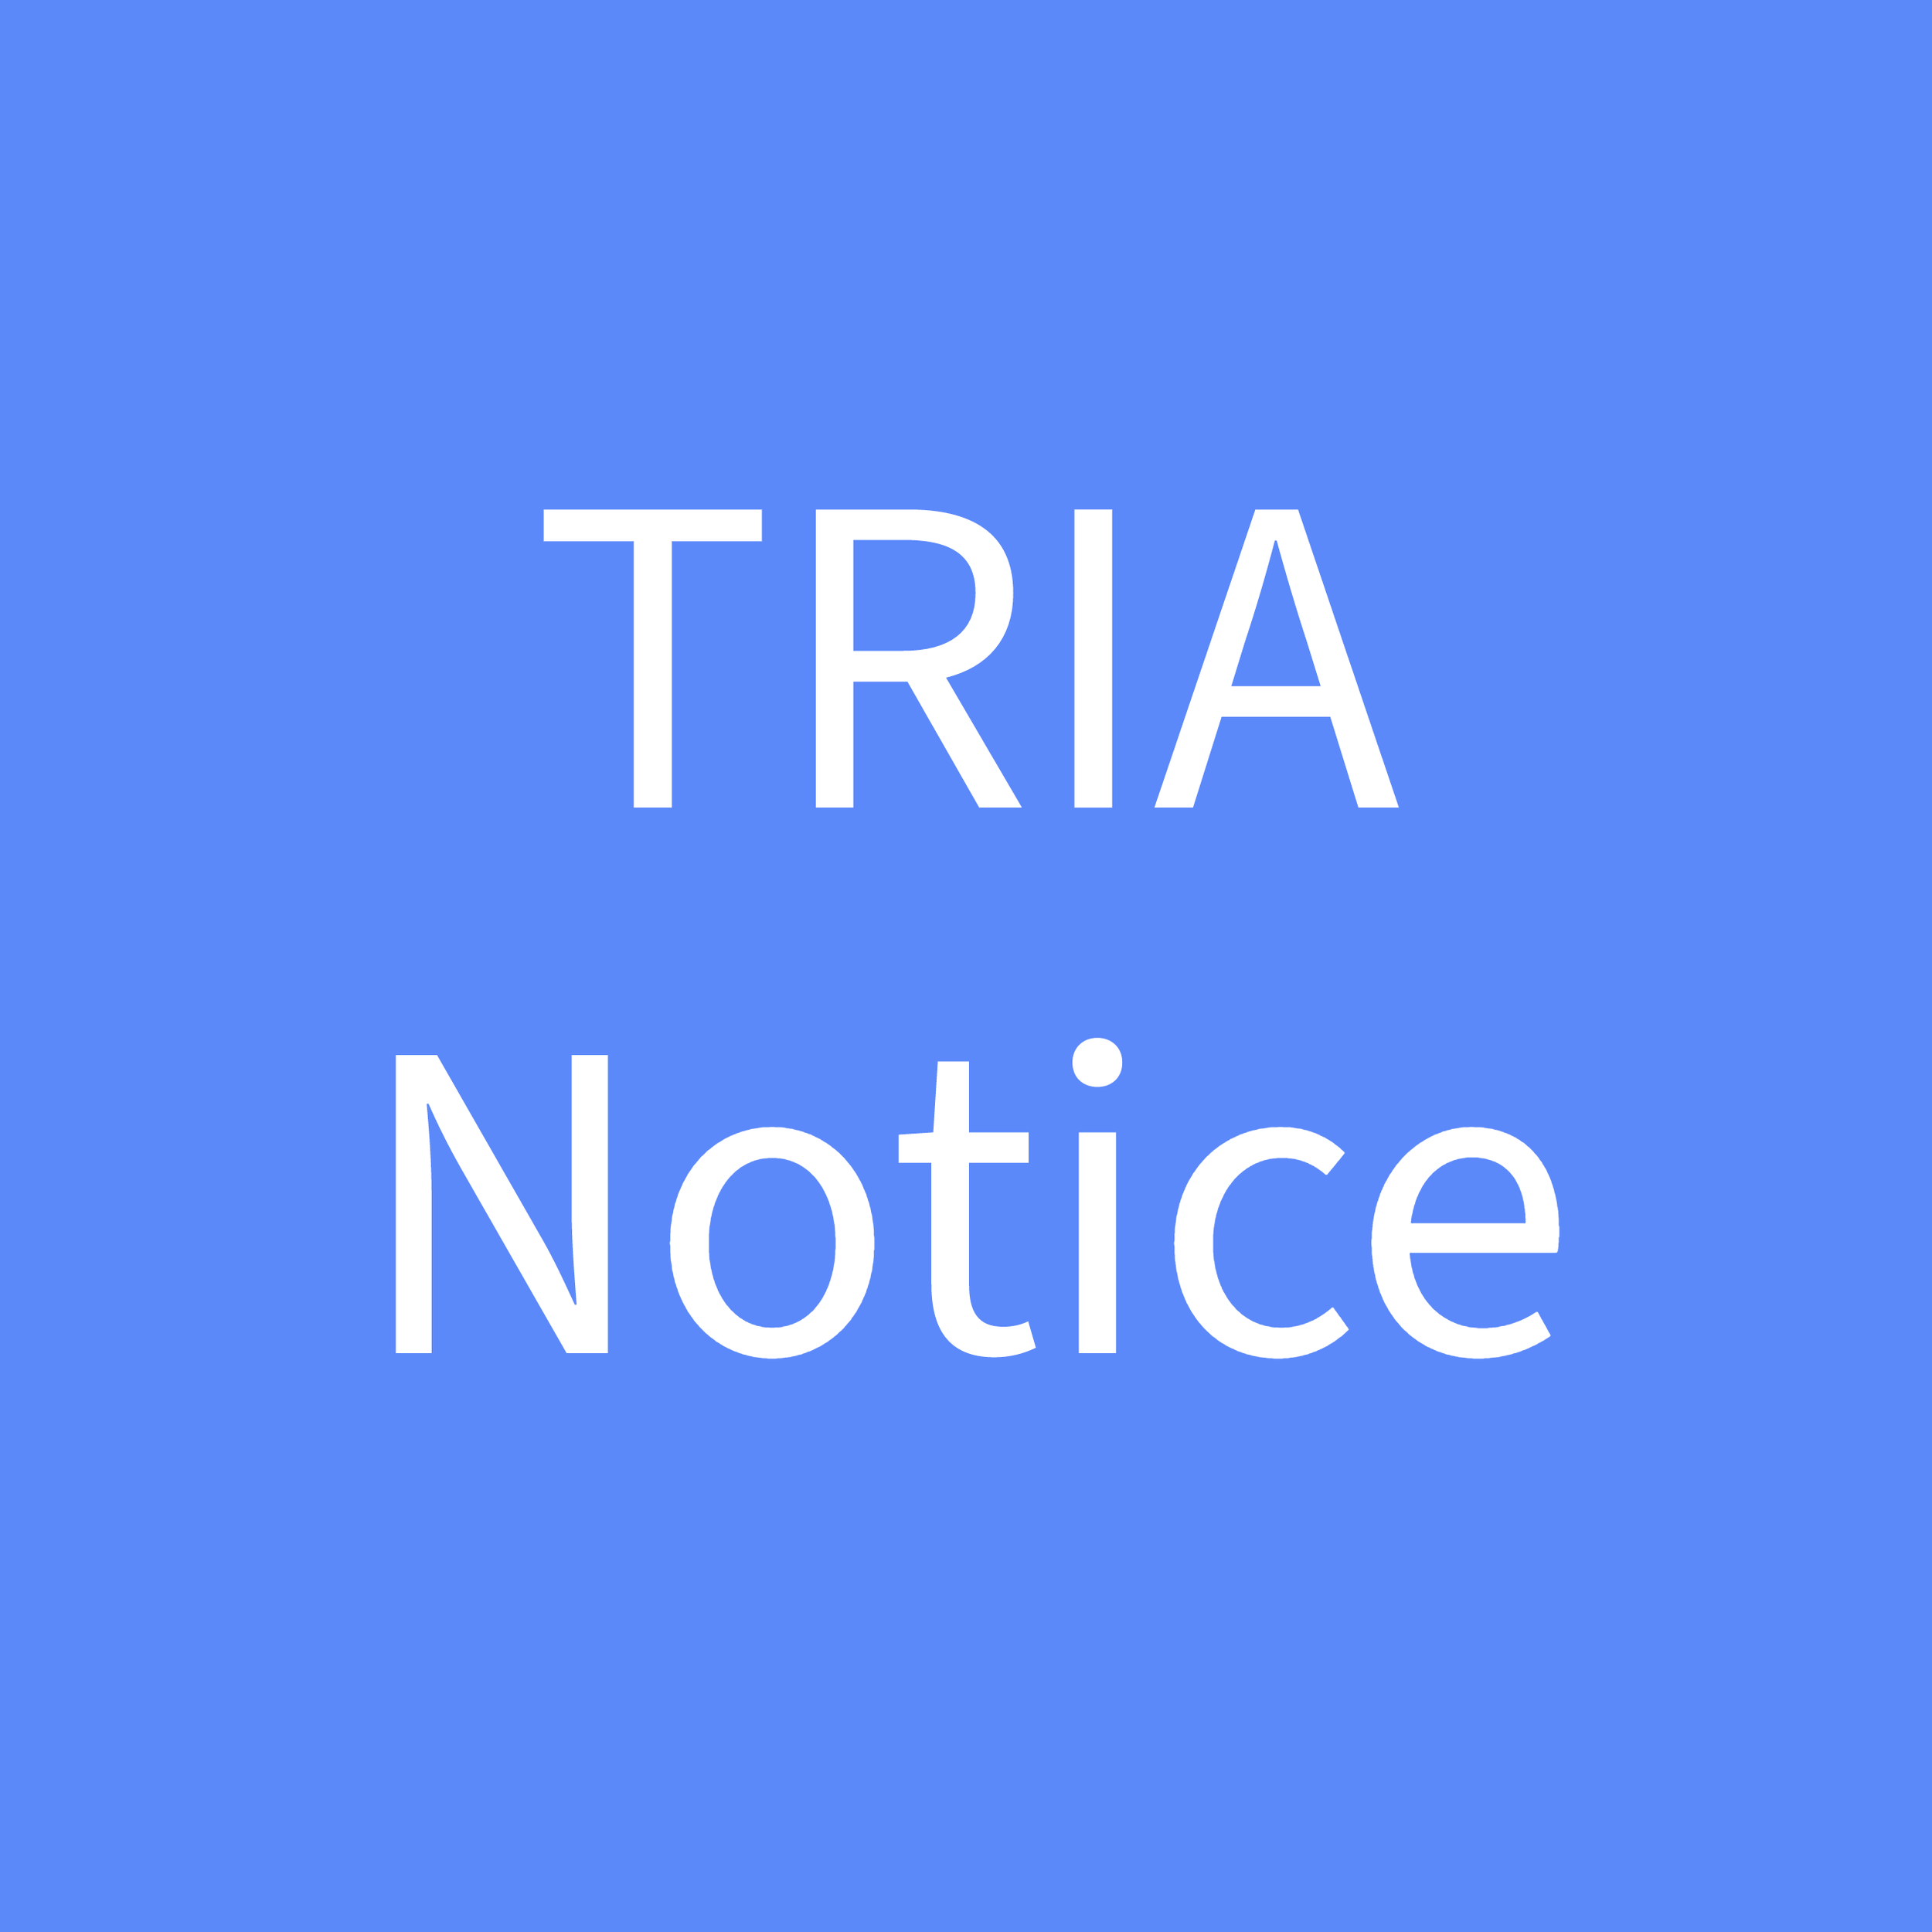 TRIA Notice